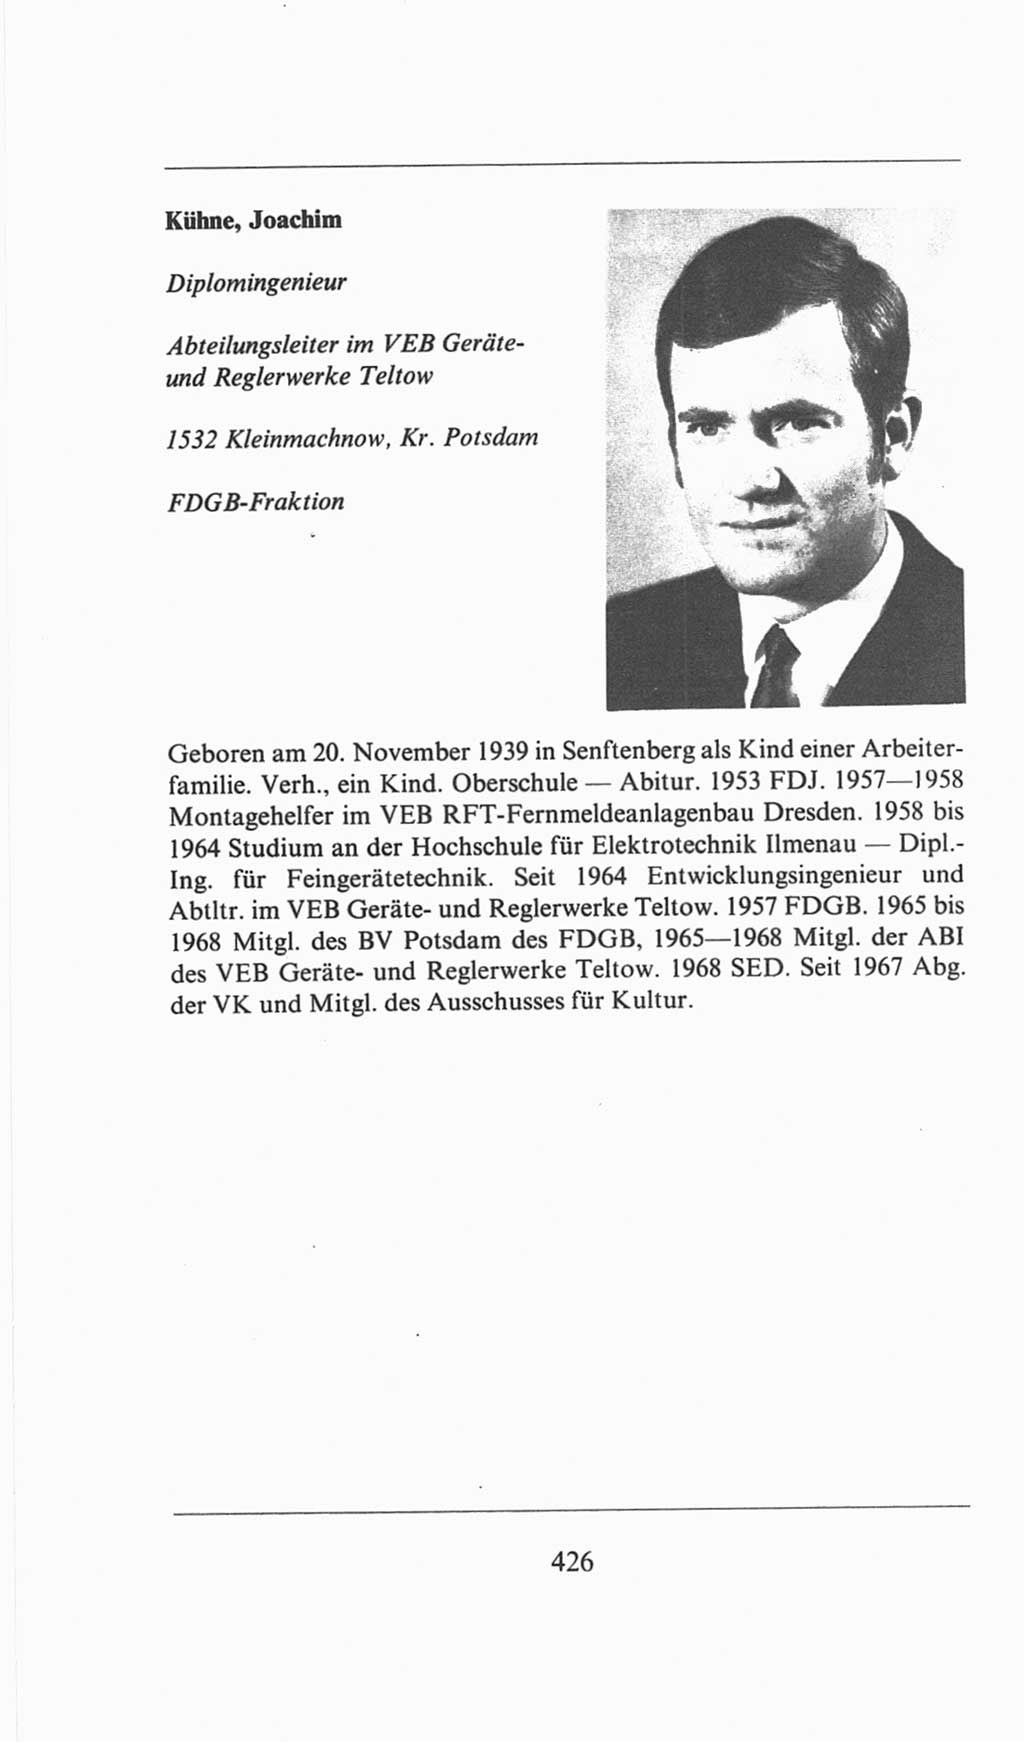 Volkskammer (VK) der Deutschen Demokratischen Republik (DDR), 6. Wahlperiode 1971-1976, Seite 426 (VK. DDR 6. WP. 1971-1976, S. 426)